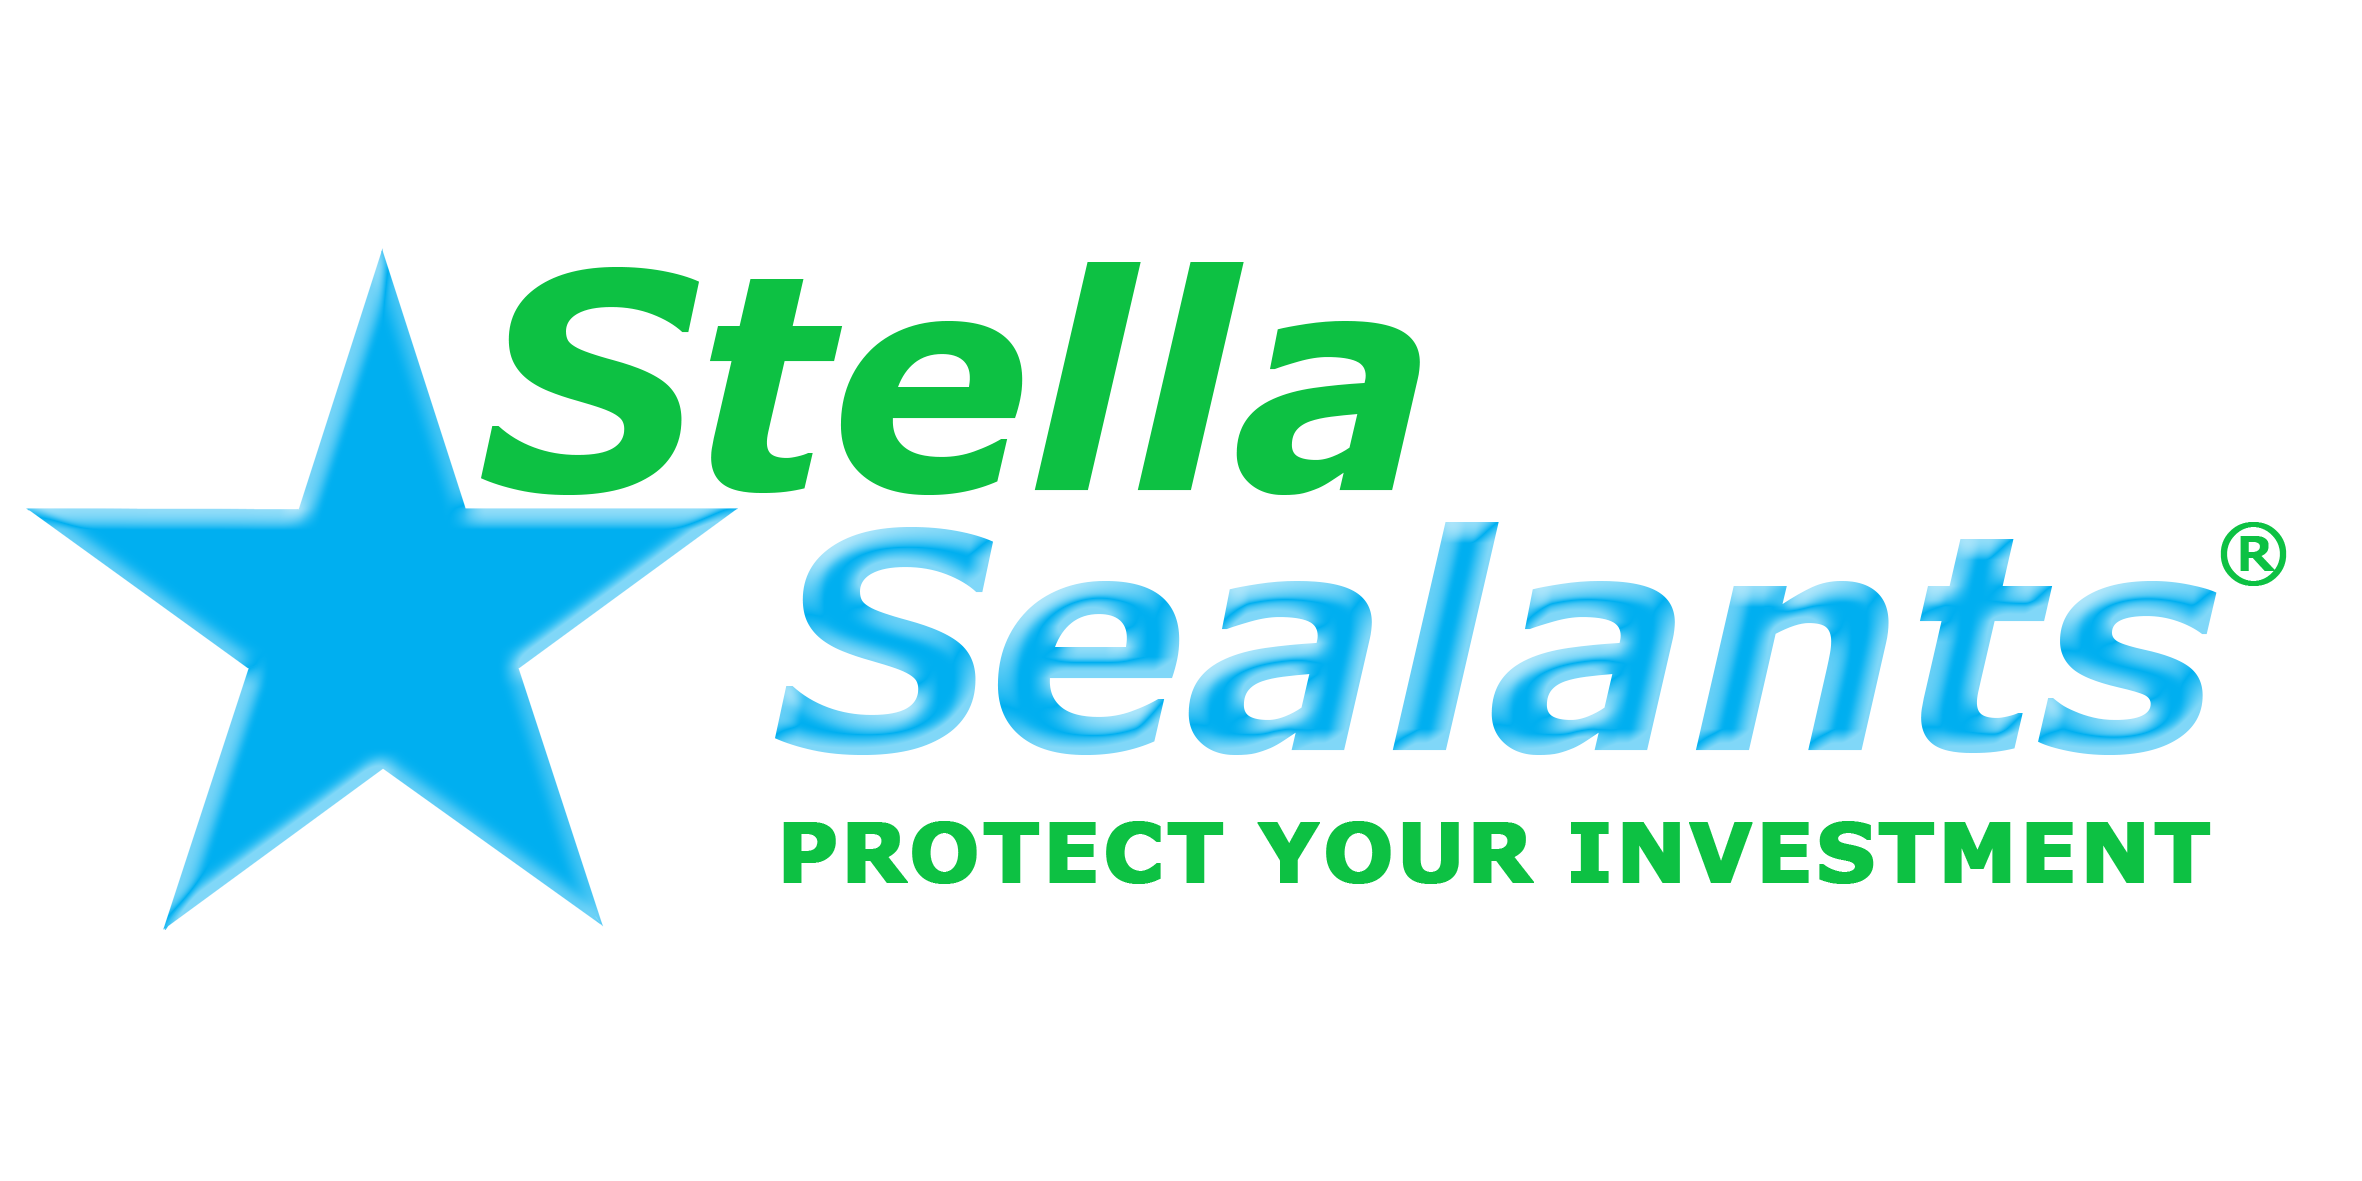 Stella Sealants Corp